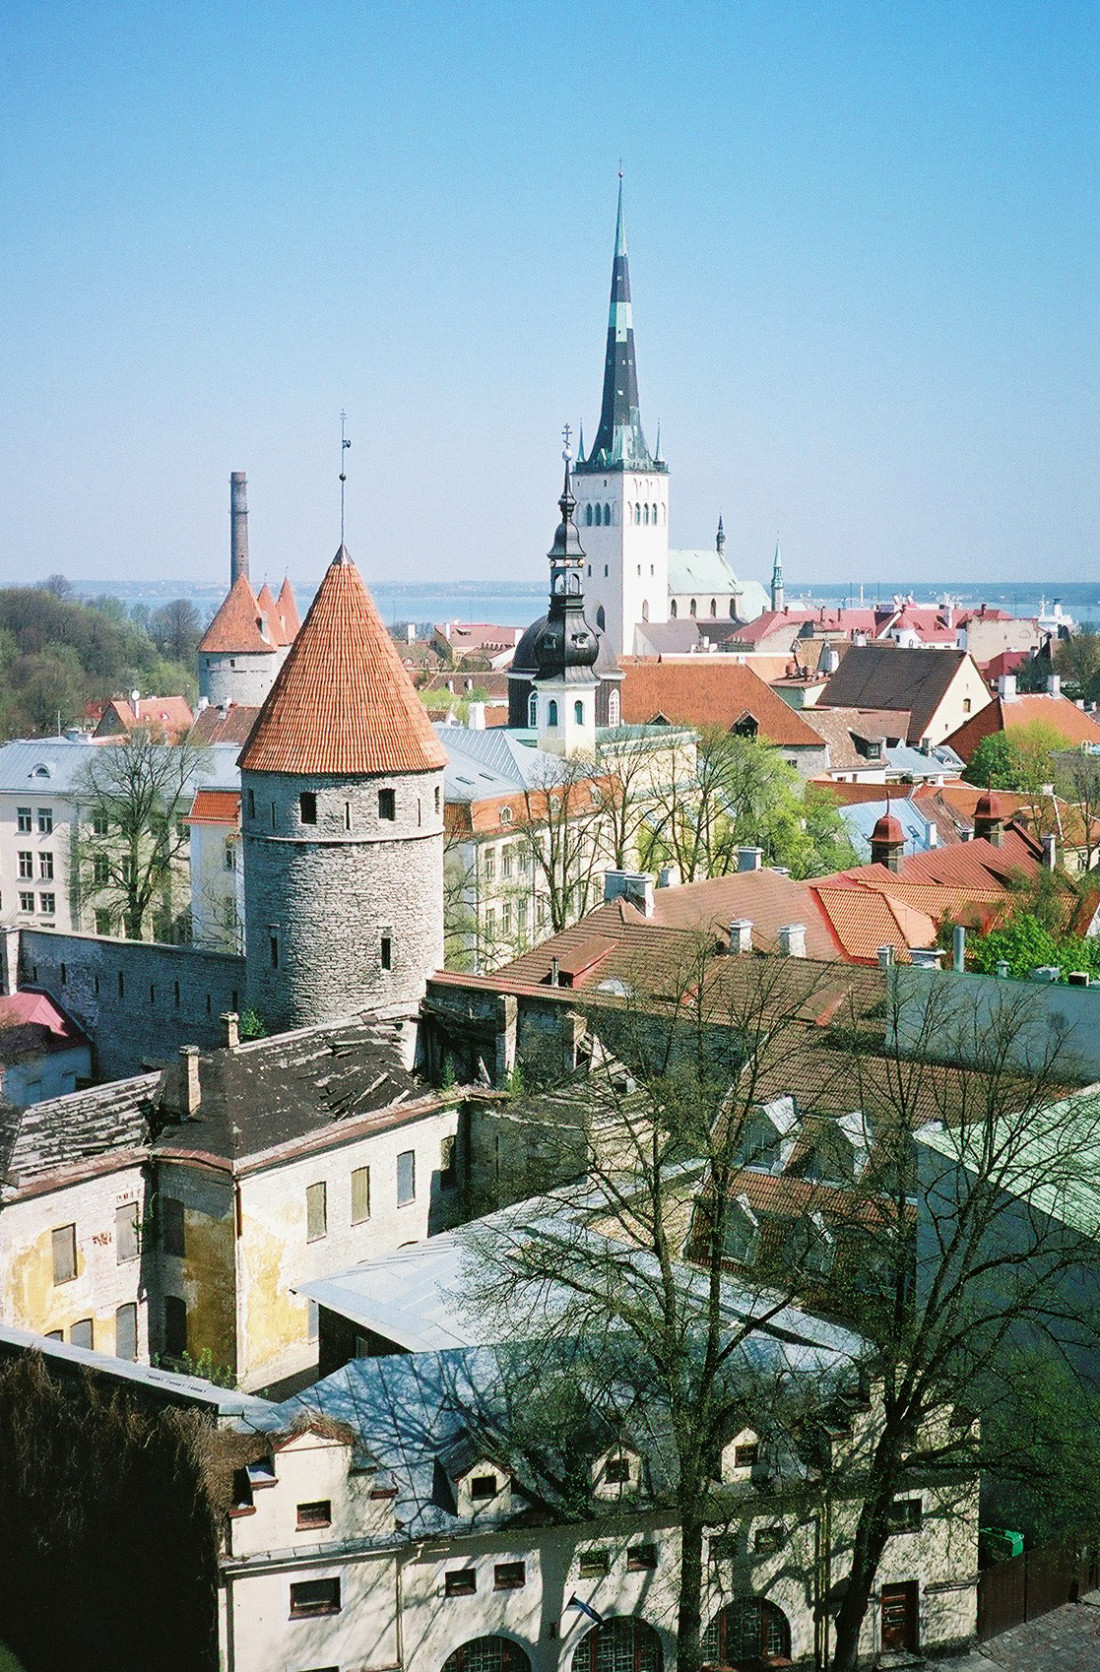 Eesti (에스토니아)-Tallinn (탈린) Photo-Image